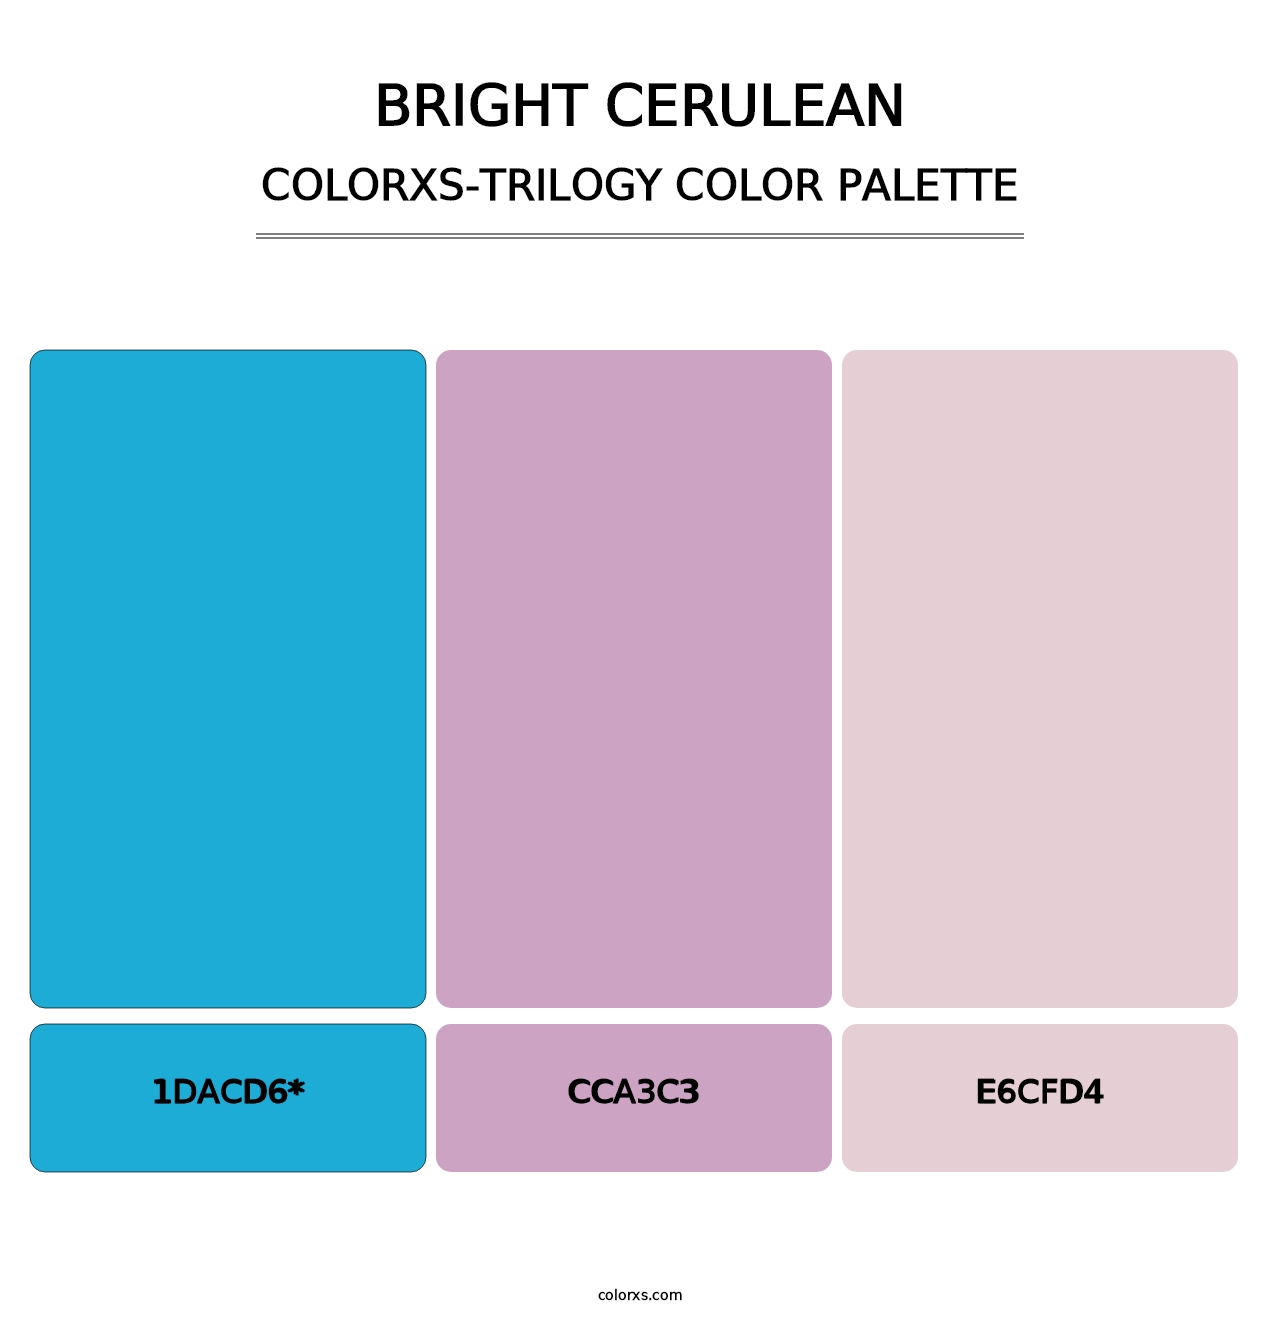 Bright Cerulean - Colorxs Trilogy Palette